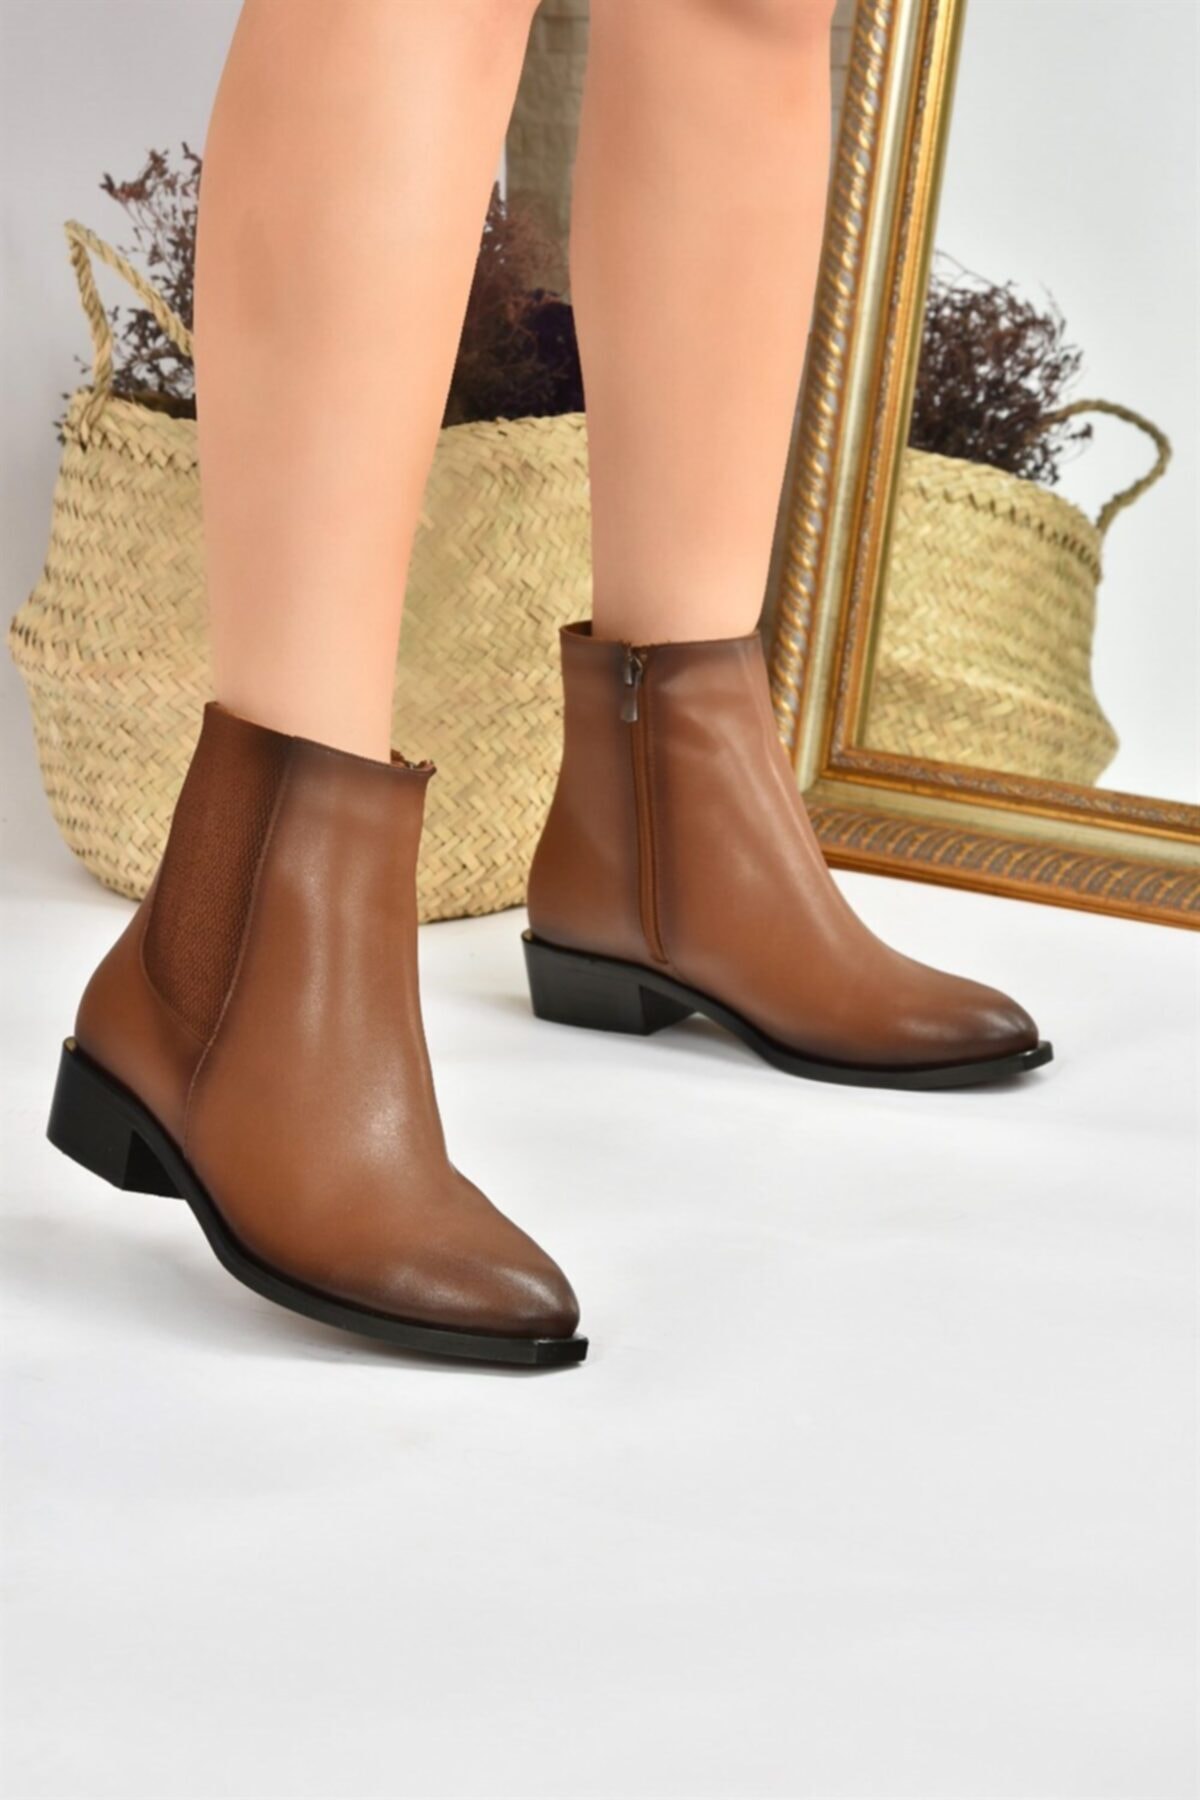 Fox Shoes Women's Camel Short Heeled Boots